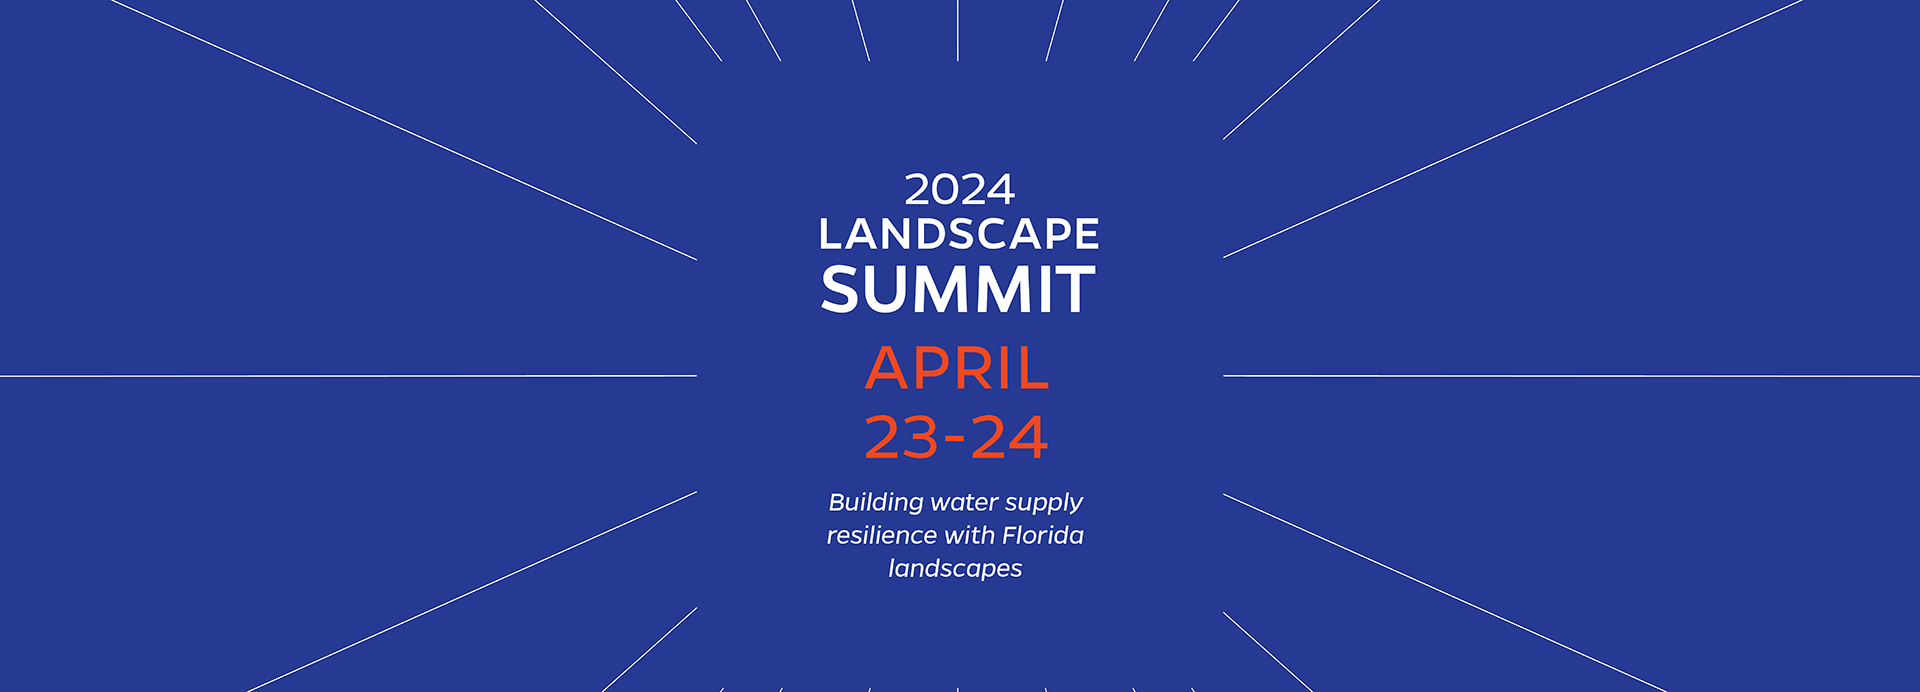 The 2024 Urban Landscape Summit banner